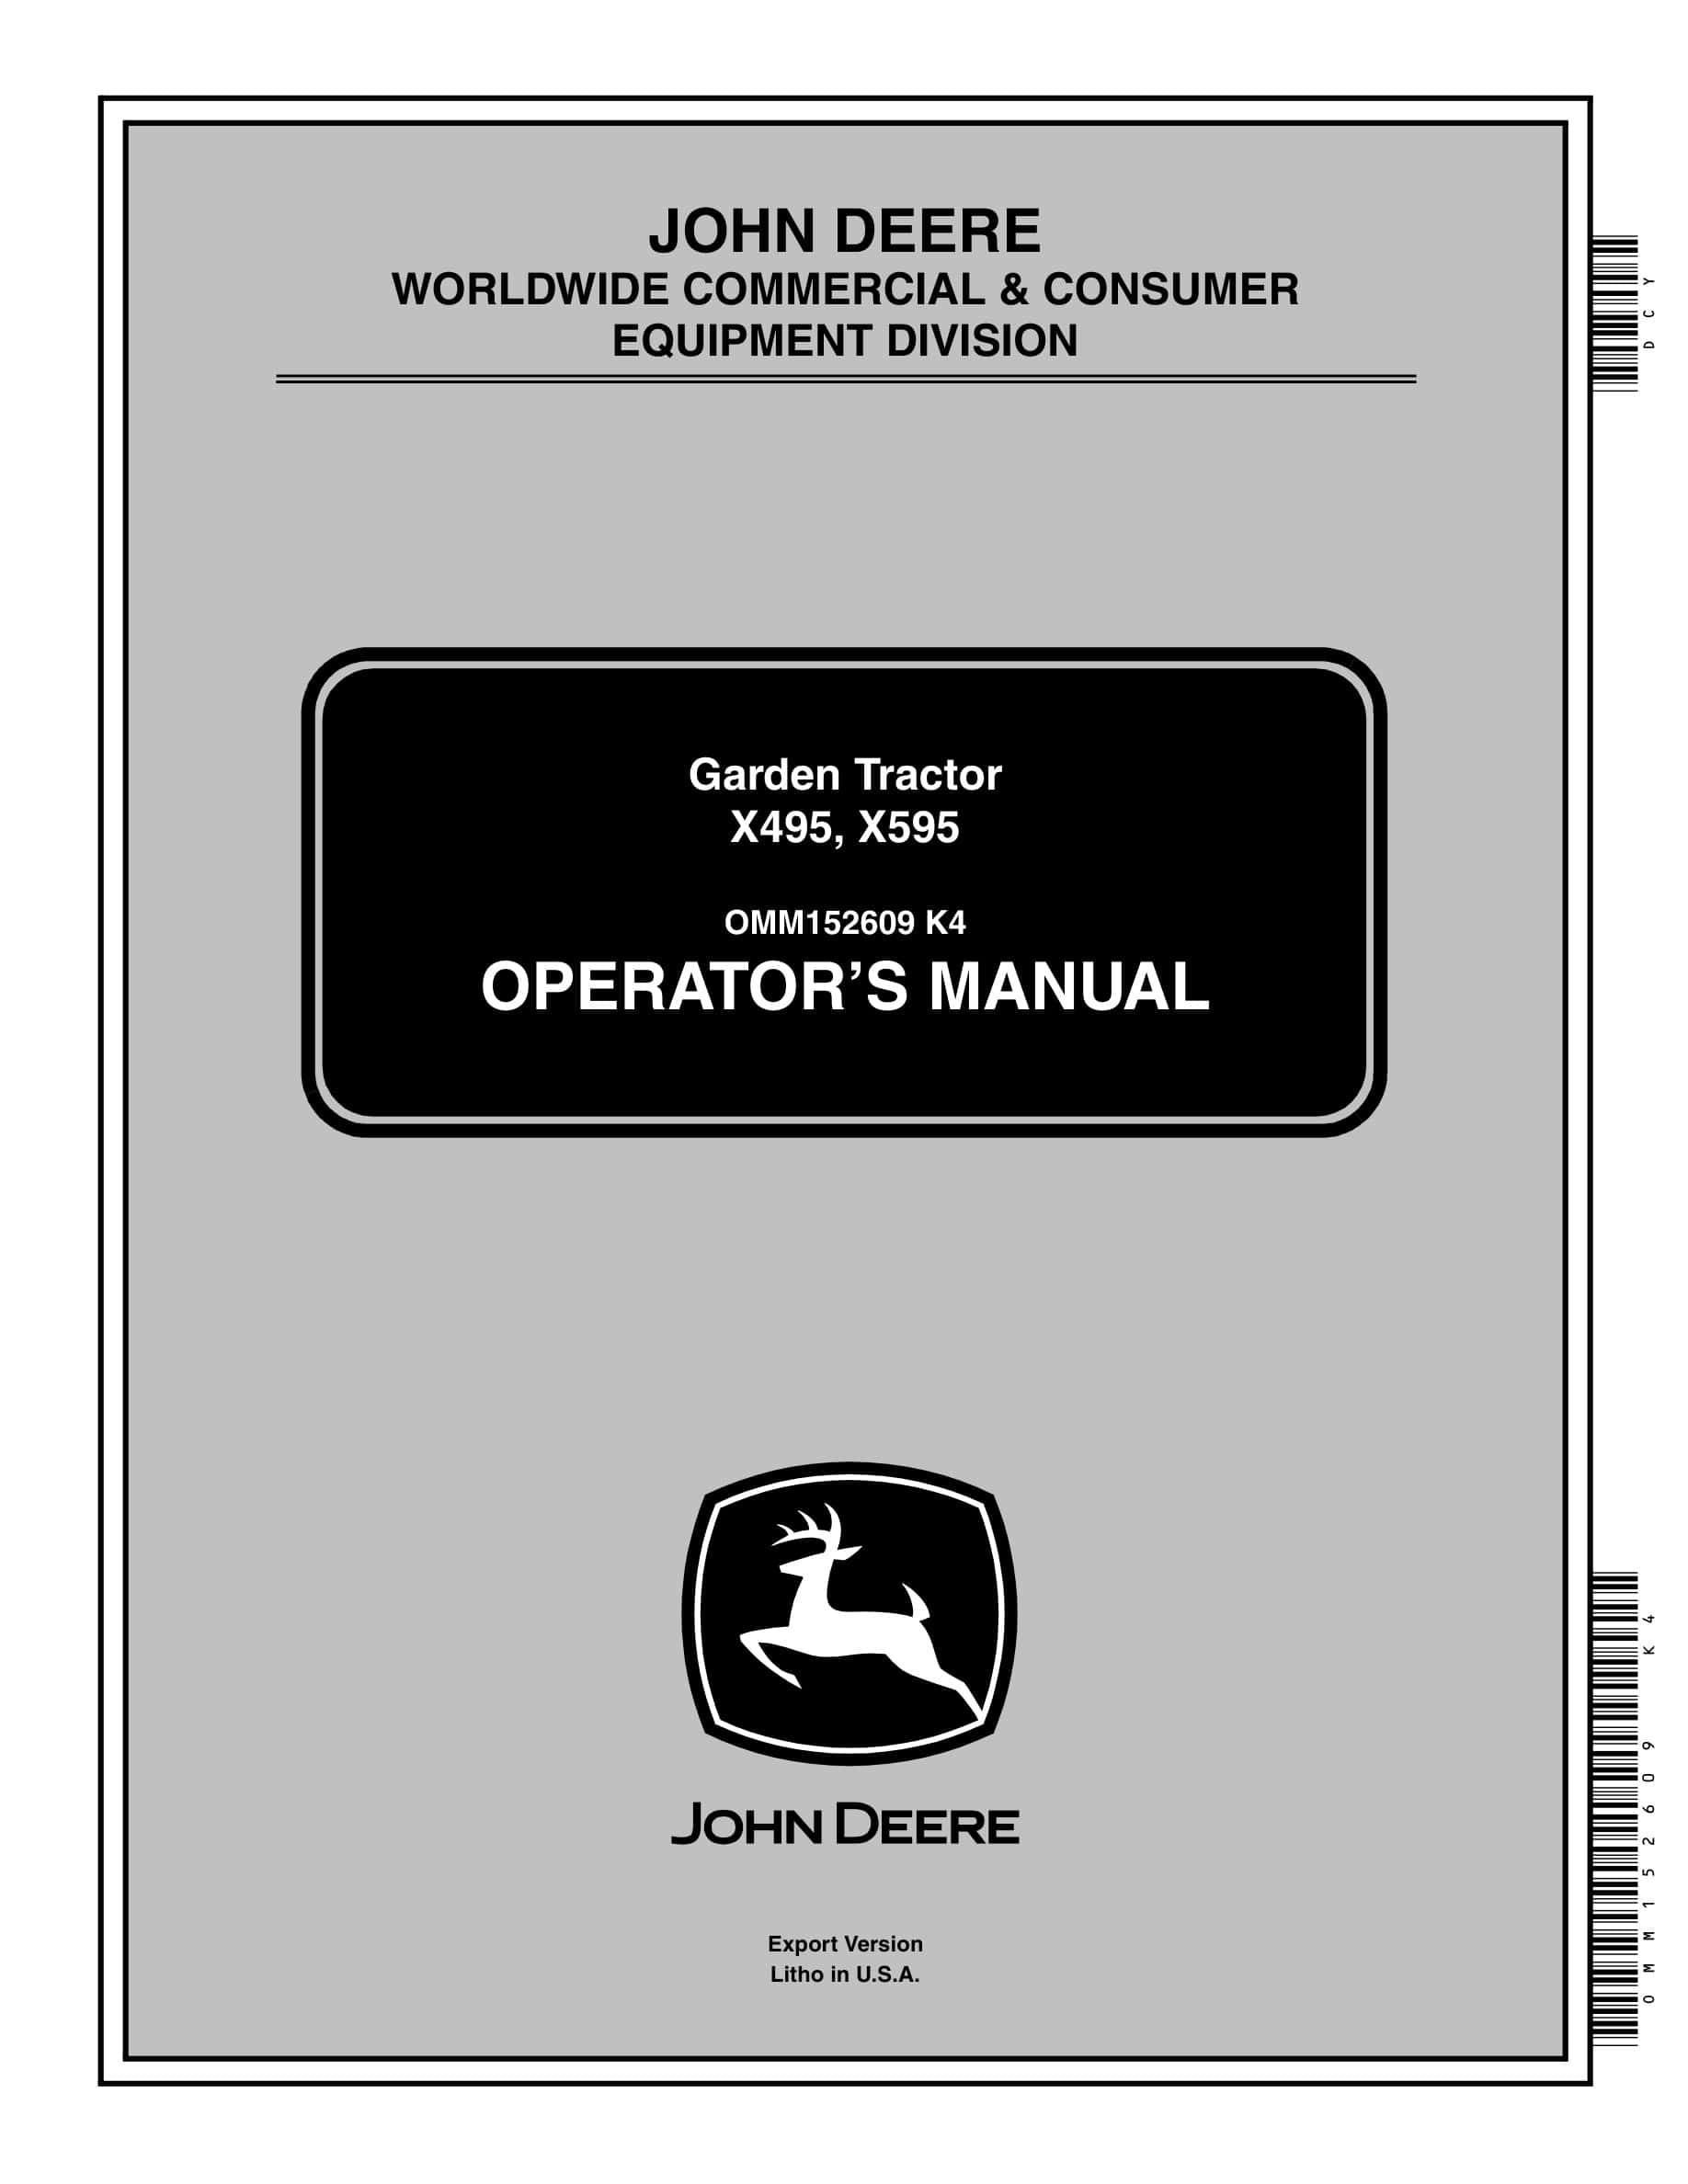 John Deere X495, X595 Garden Tractors Operator Manual OMM152609-1